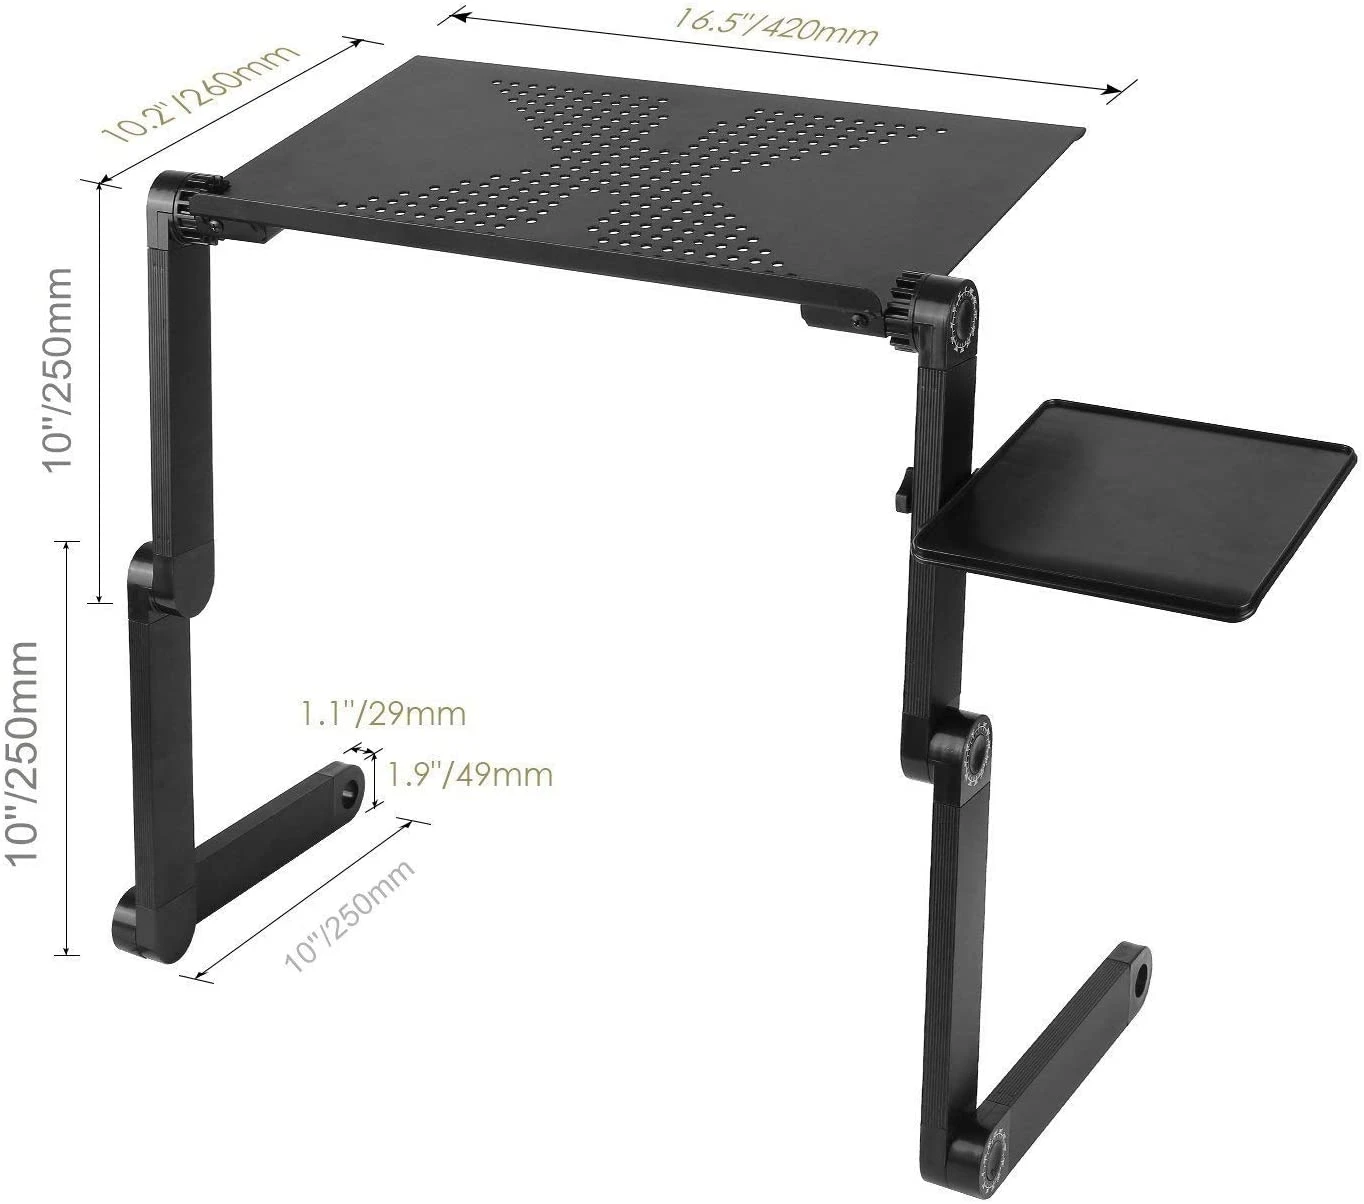 Laptop Stand Aluminum Adjustable,Ergonomic portable Laptop Bed Stand,Foldable adjust Laptop Stand